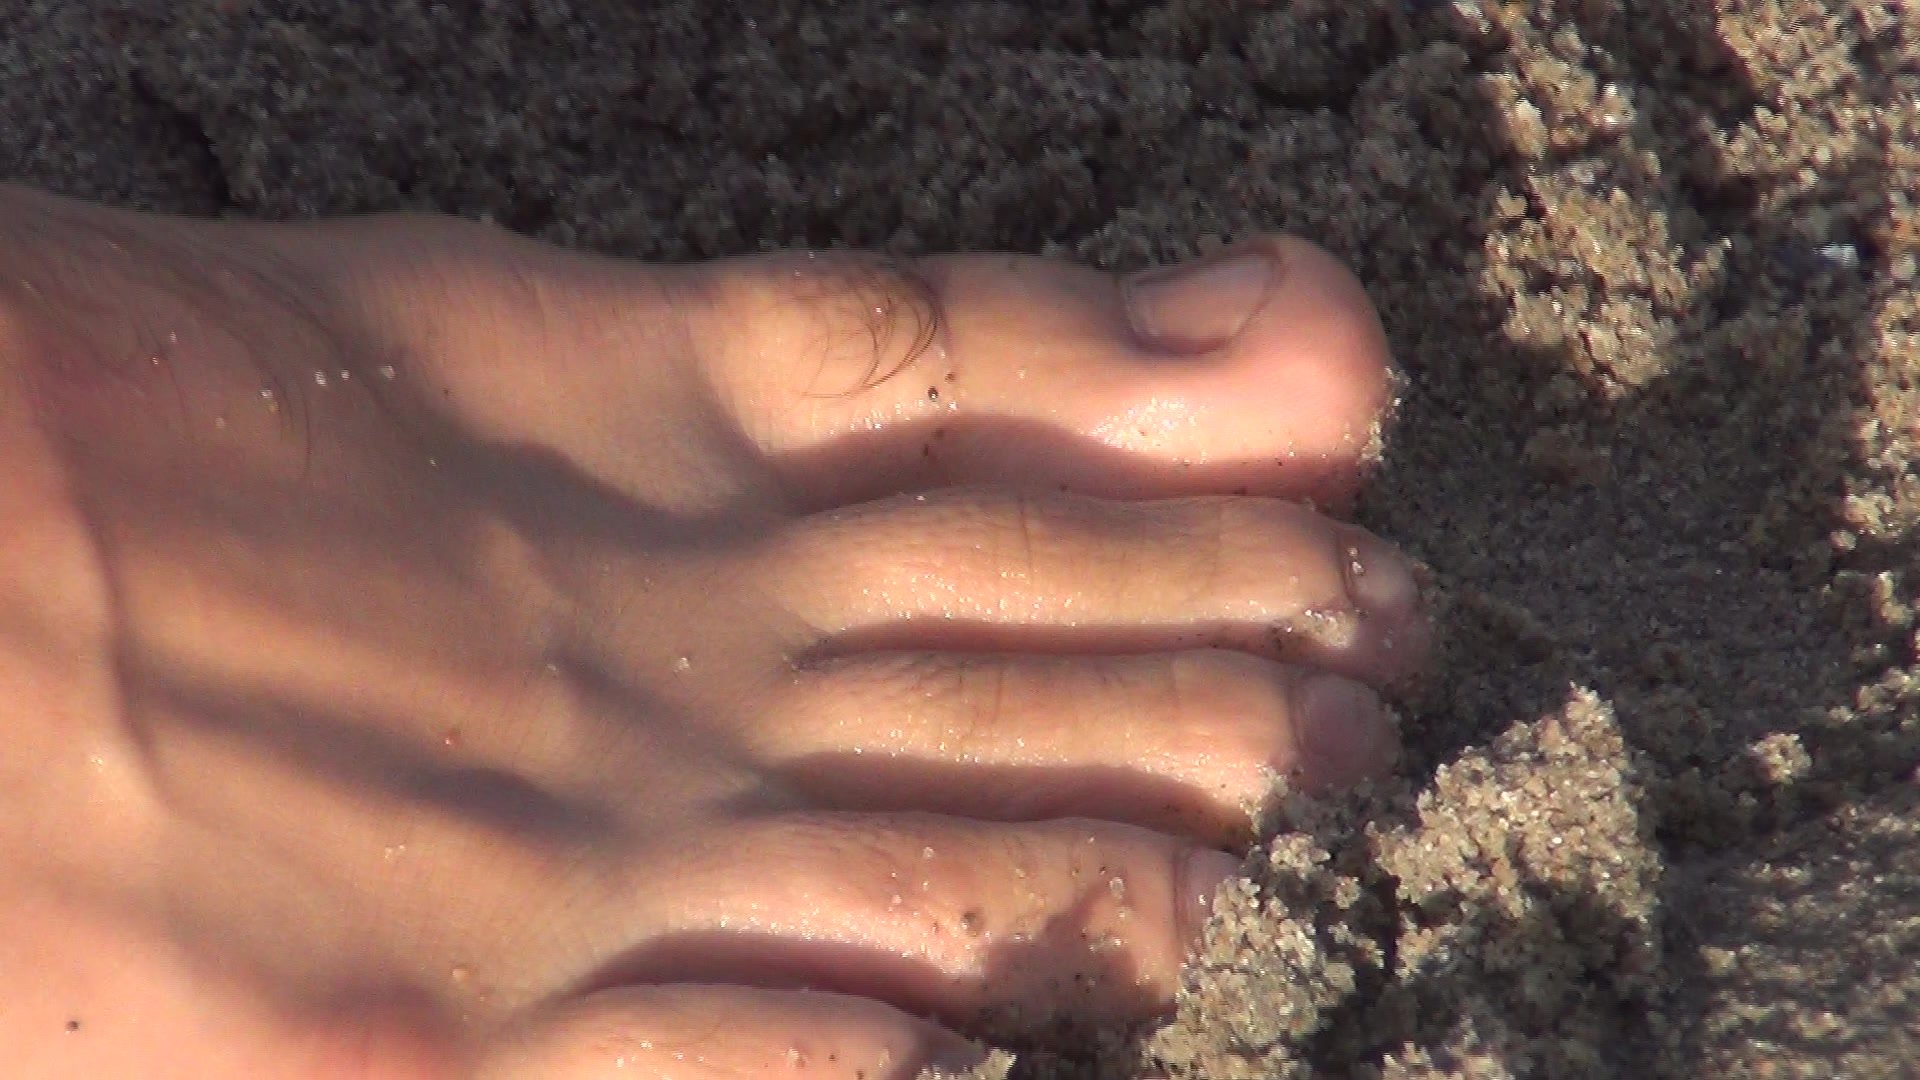 Guy shows cute feet at the beach